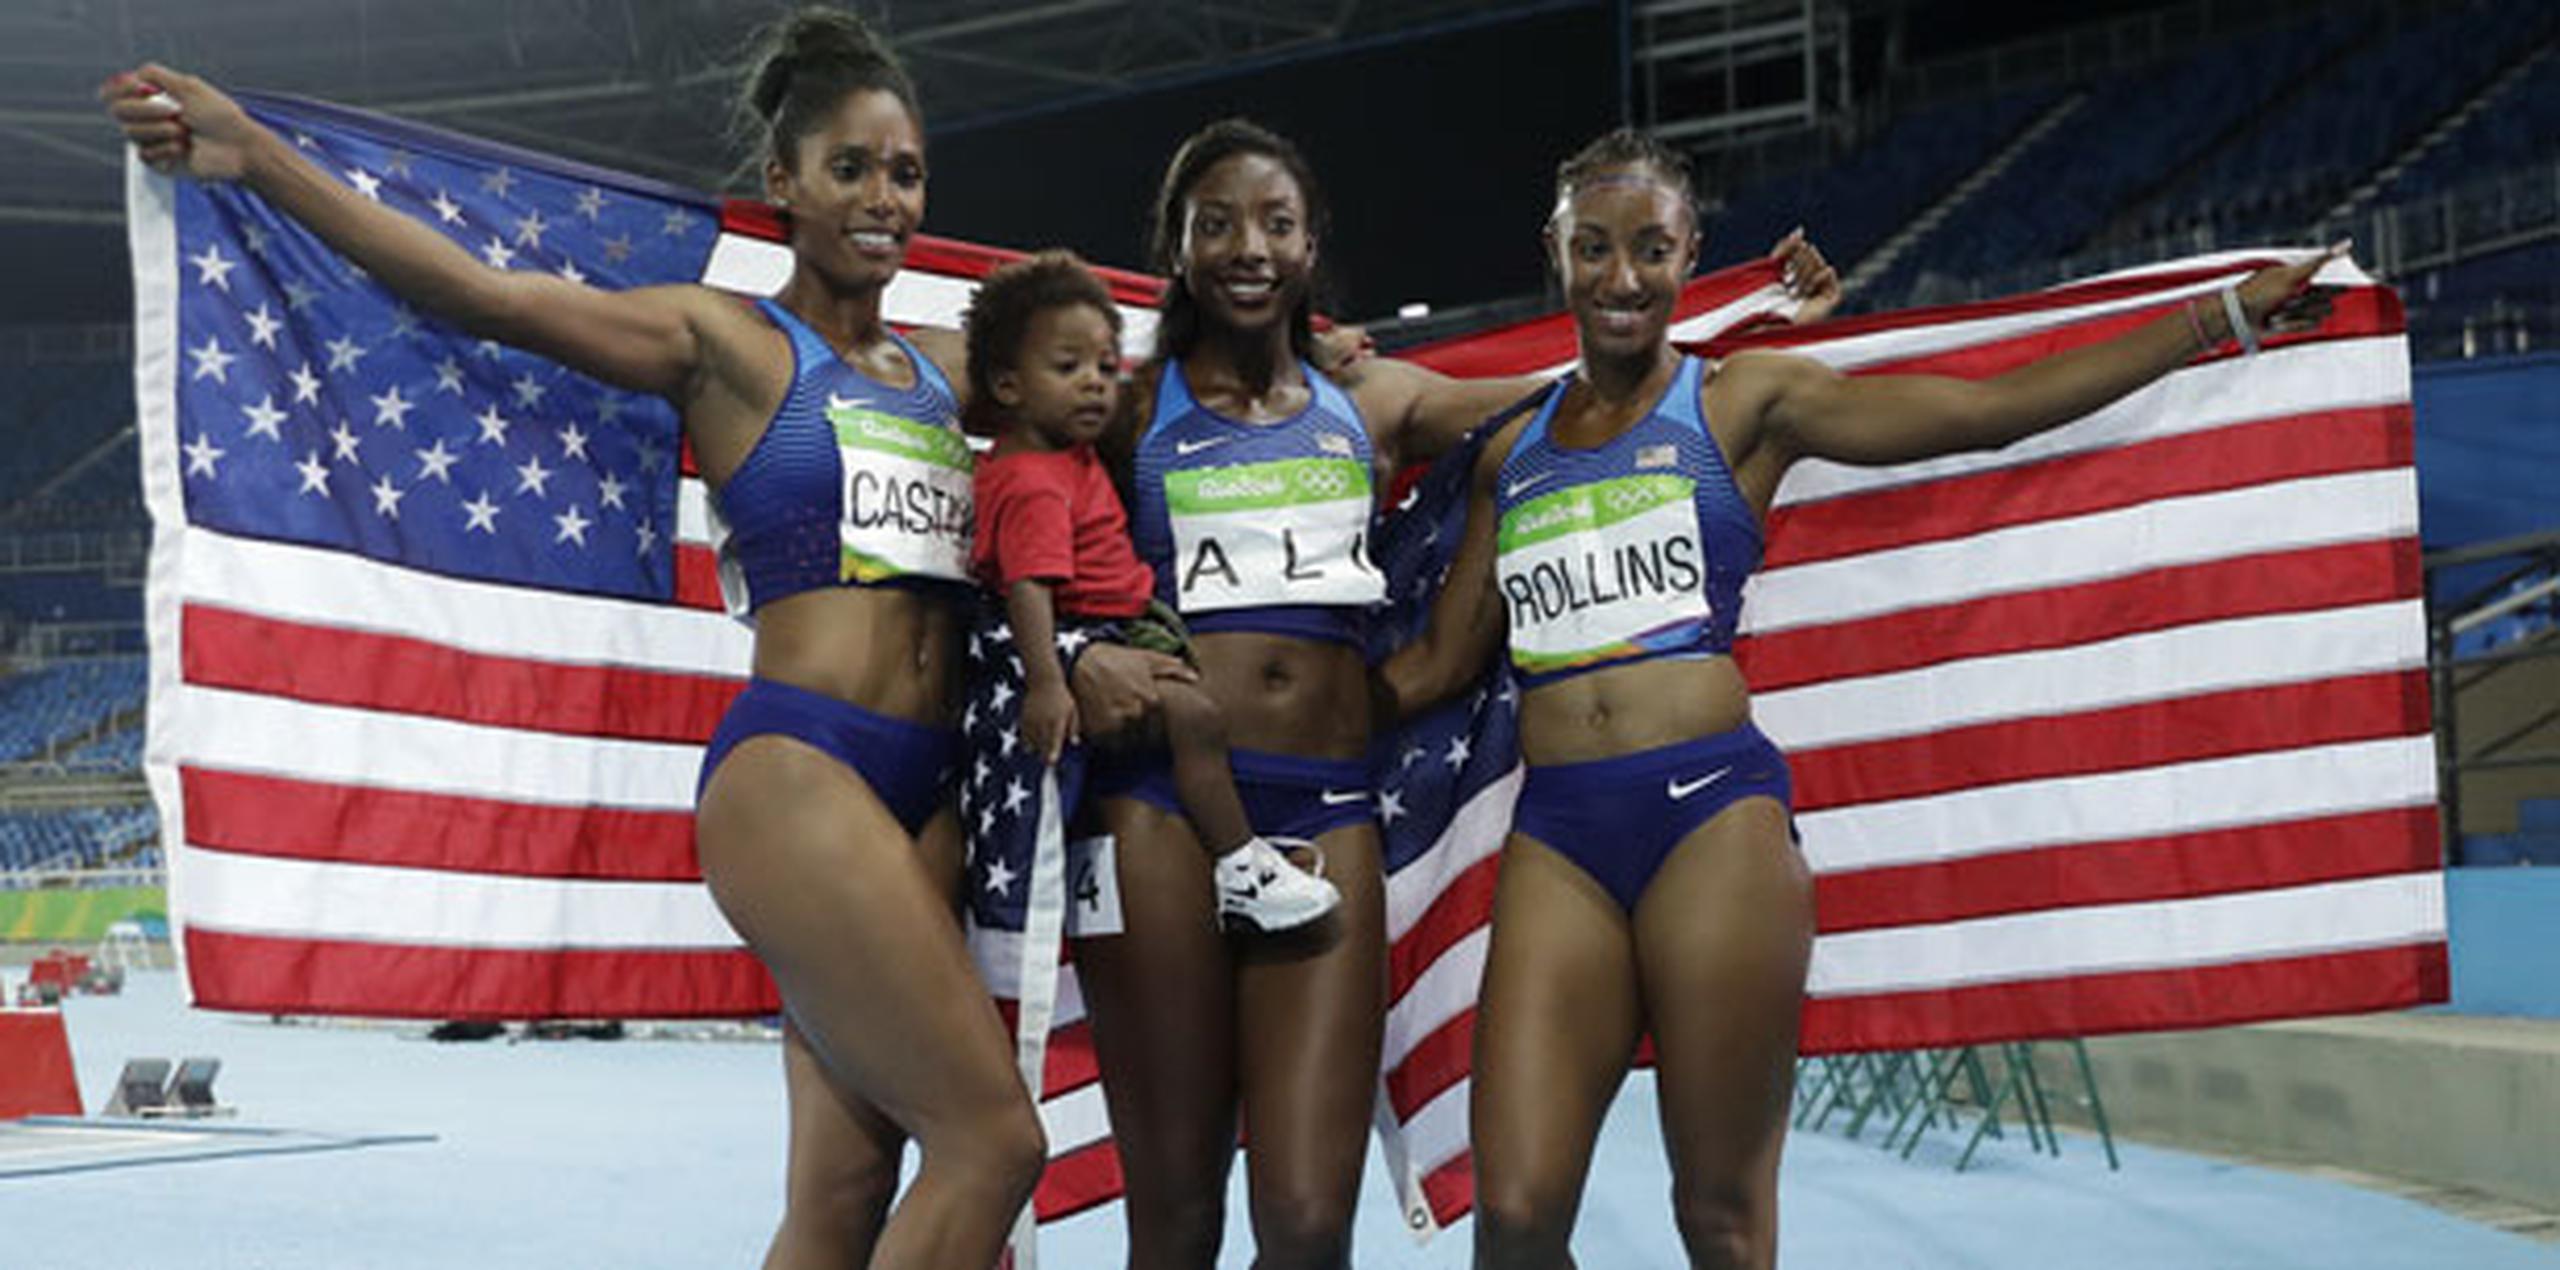 La prueba femenina de vallas presentaba un rotundo predominio estadounidense -las siete primeras del ránking mundial de la temporada proceden de ese país.(AP Photo/Matt Slocum)
